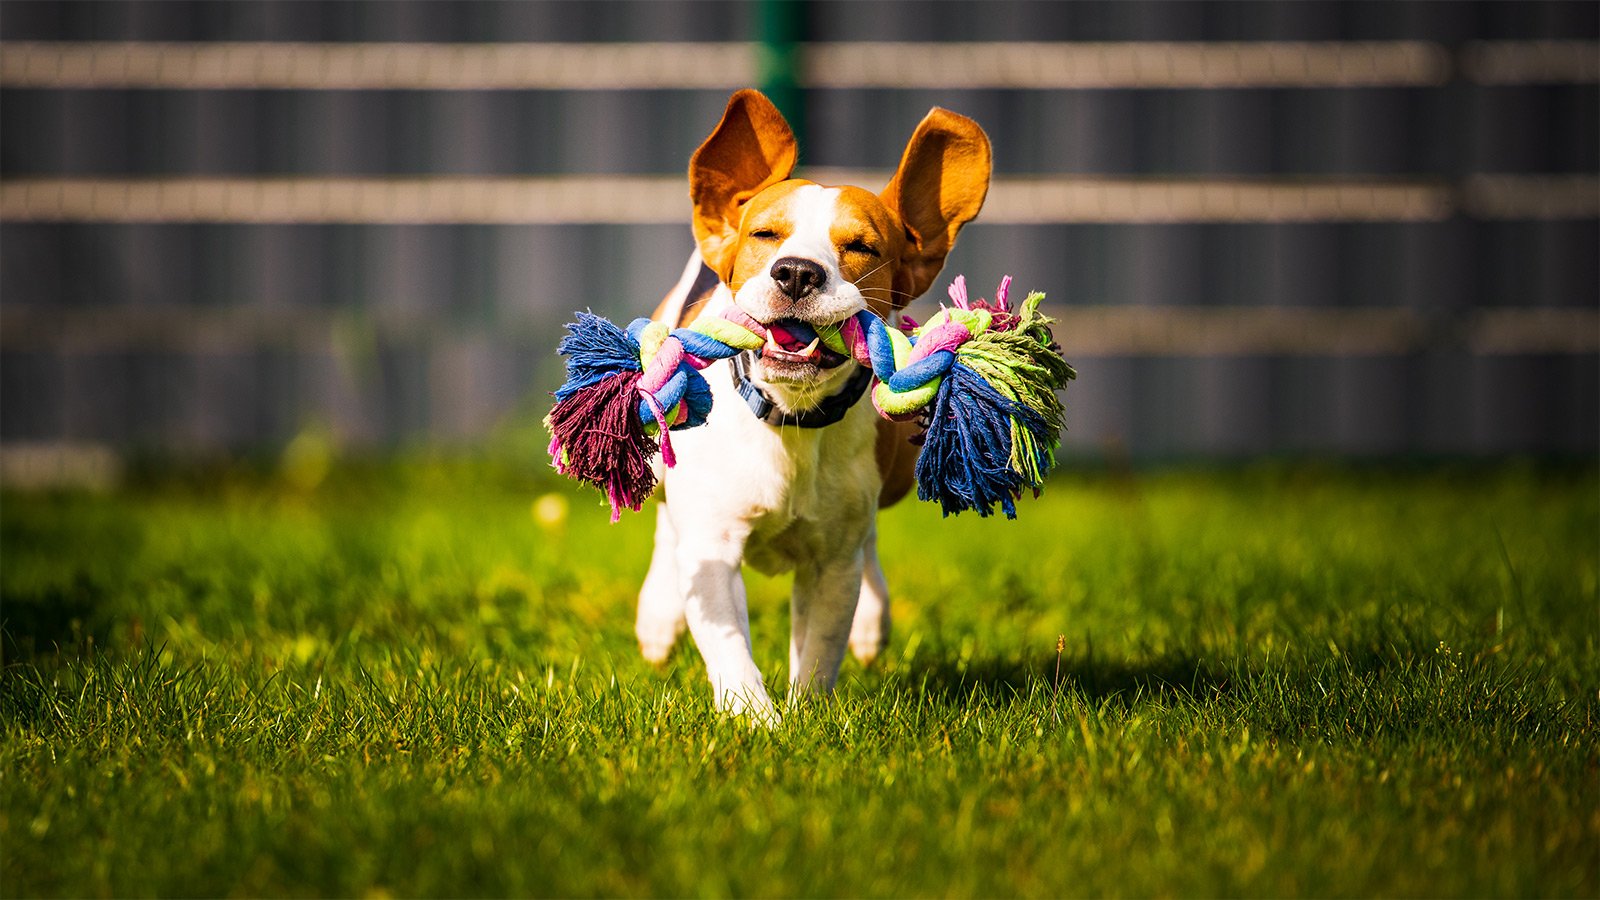 Les 5 meilleurs jouets pour chien pour les activités de plein air